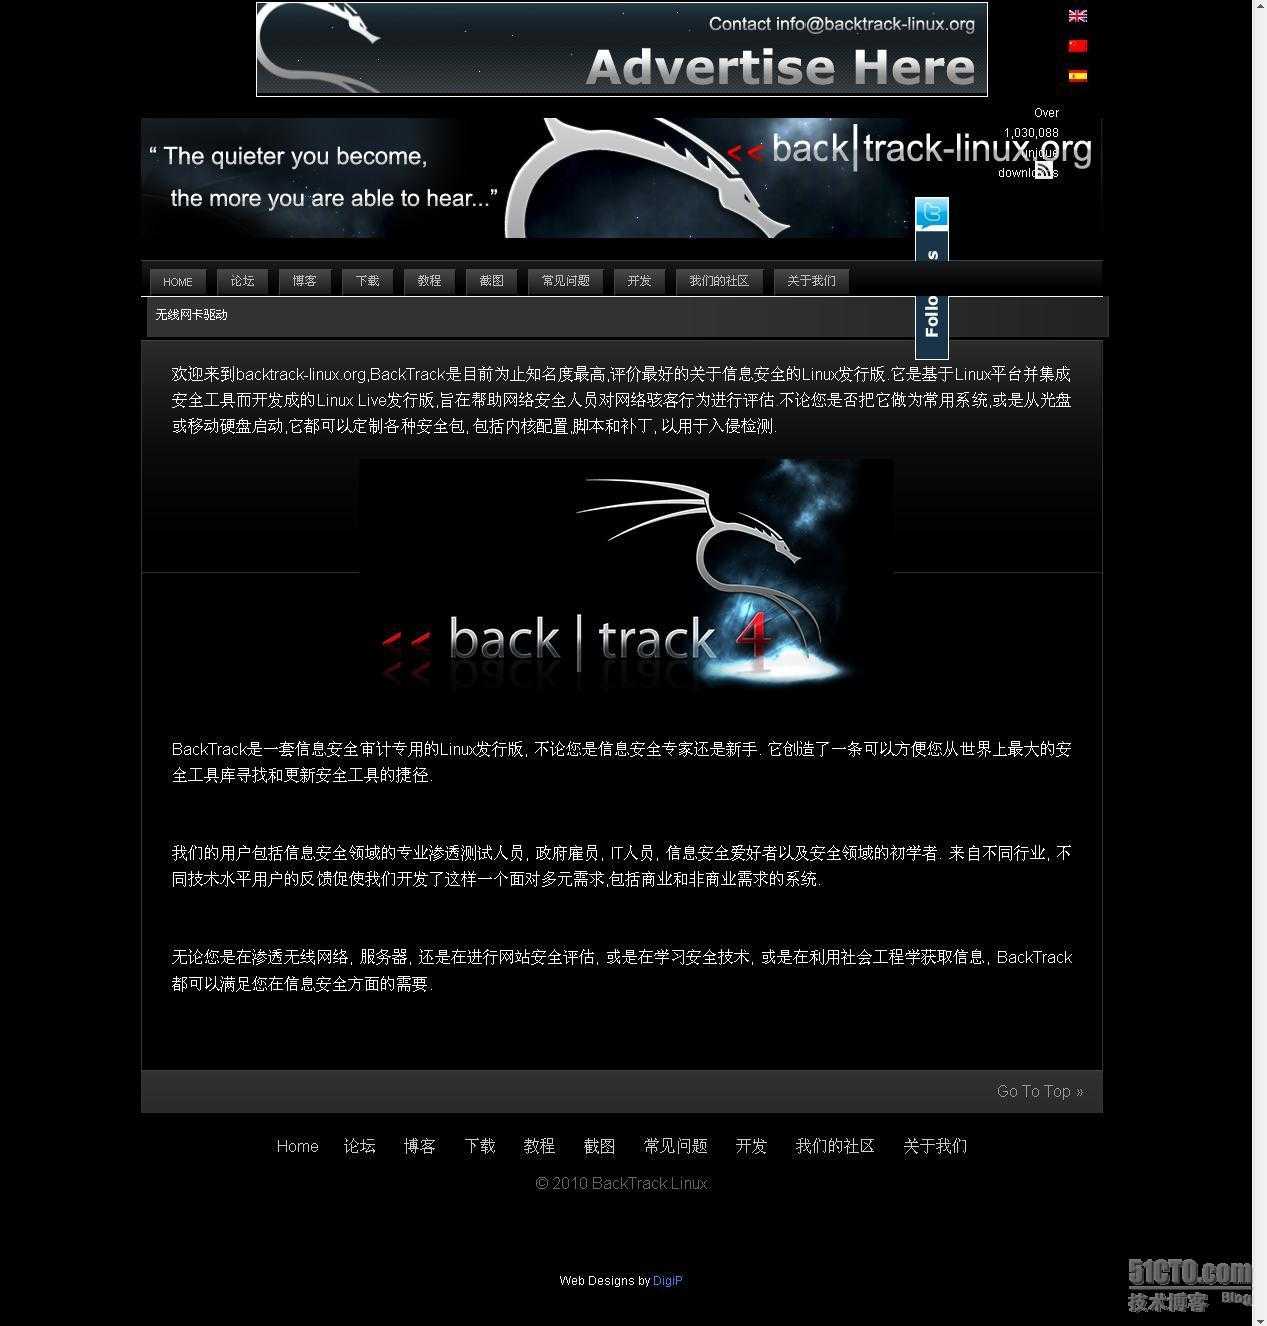 官方发布BackTrack中文版网站[通俗易懂]